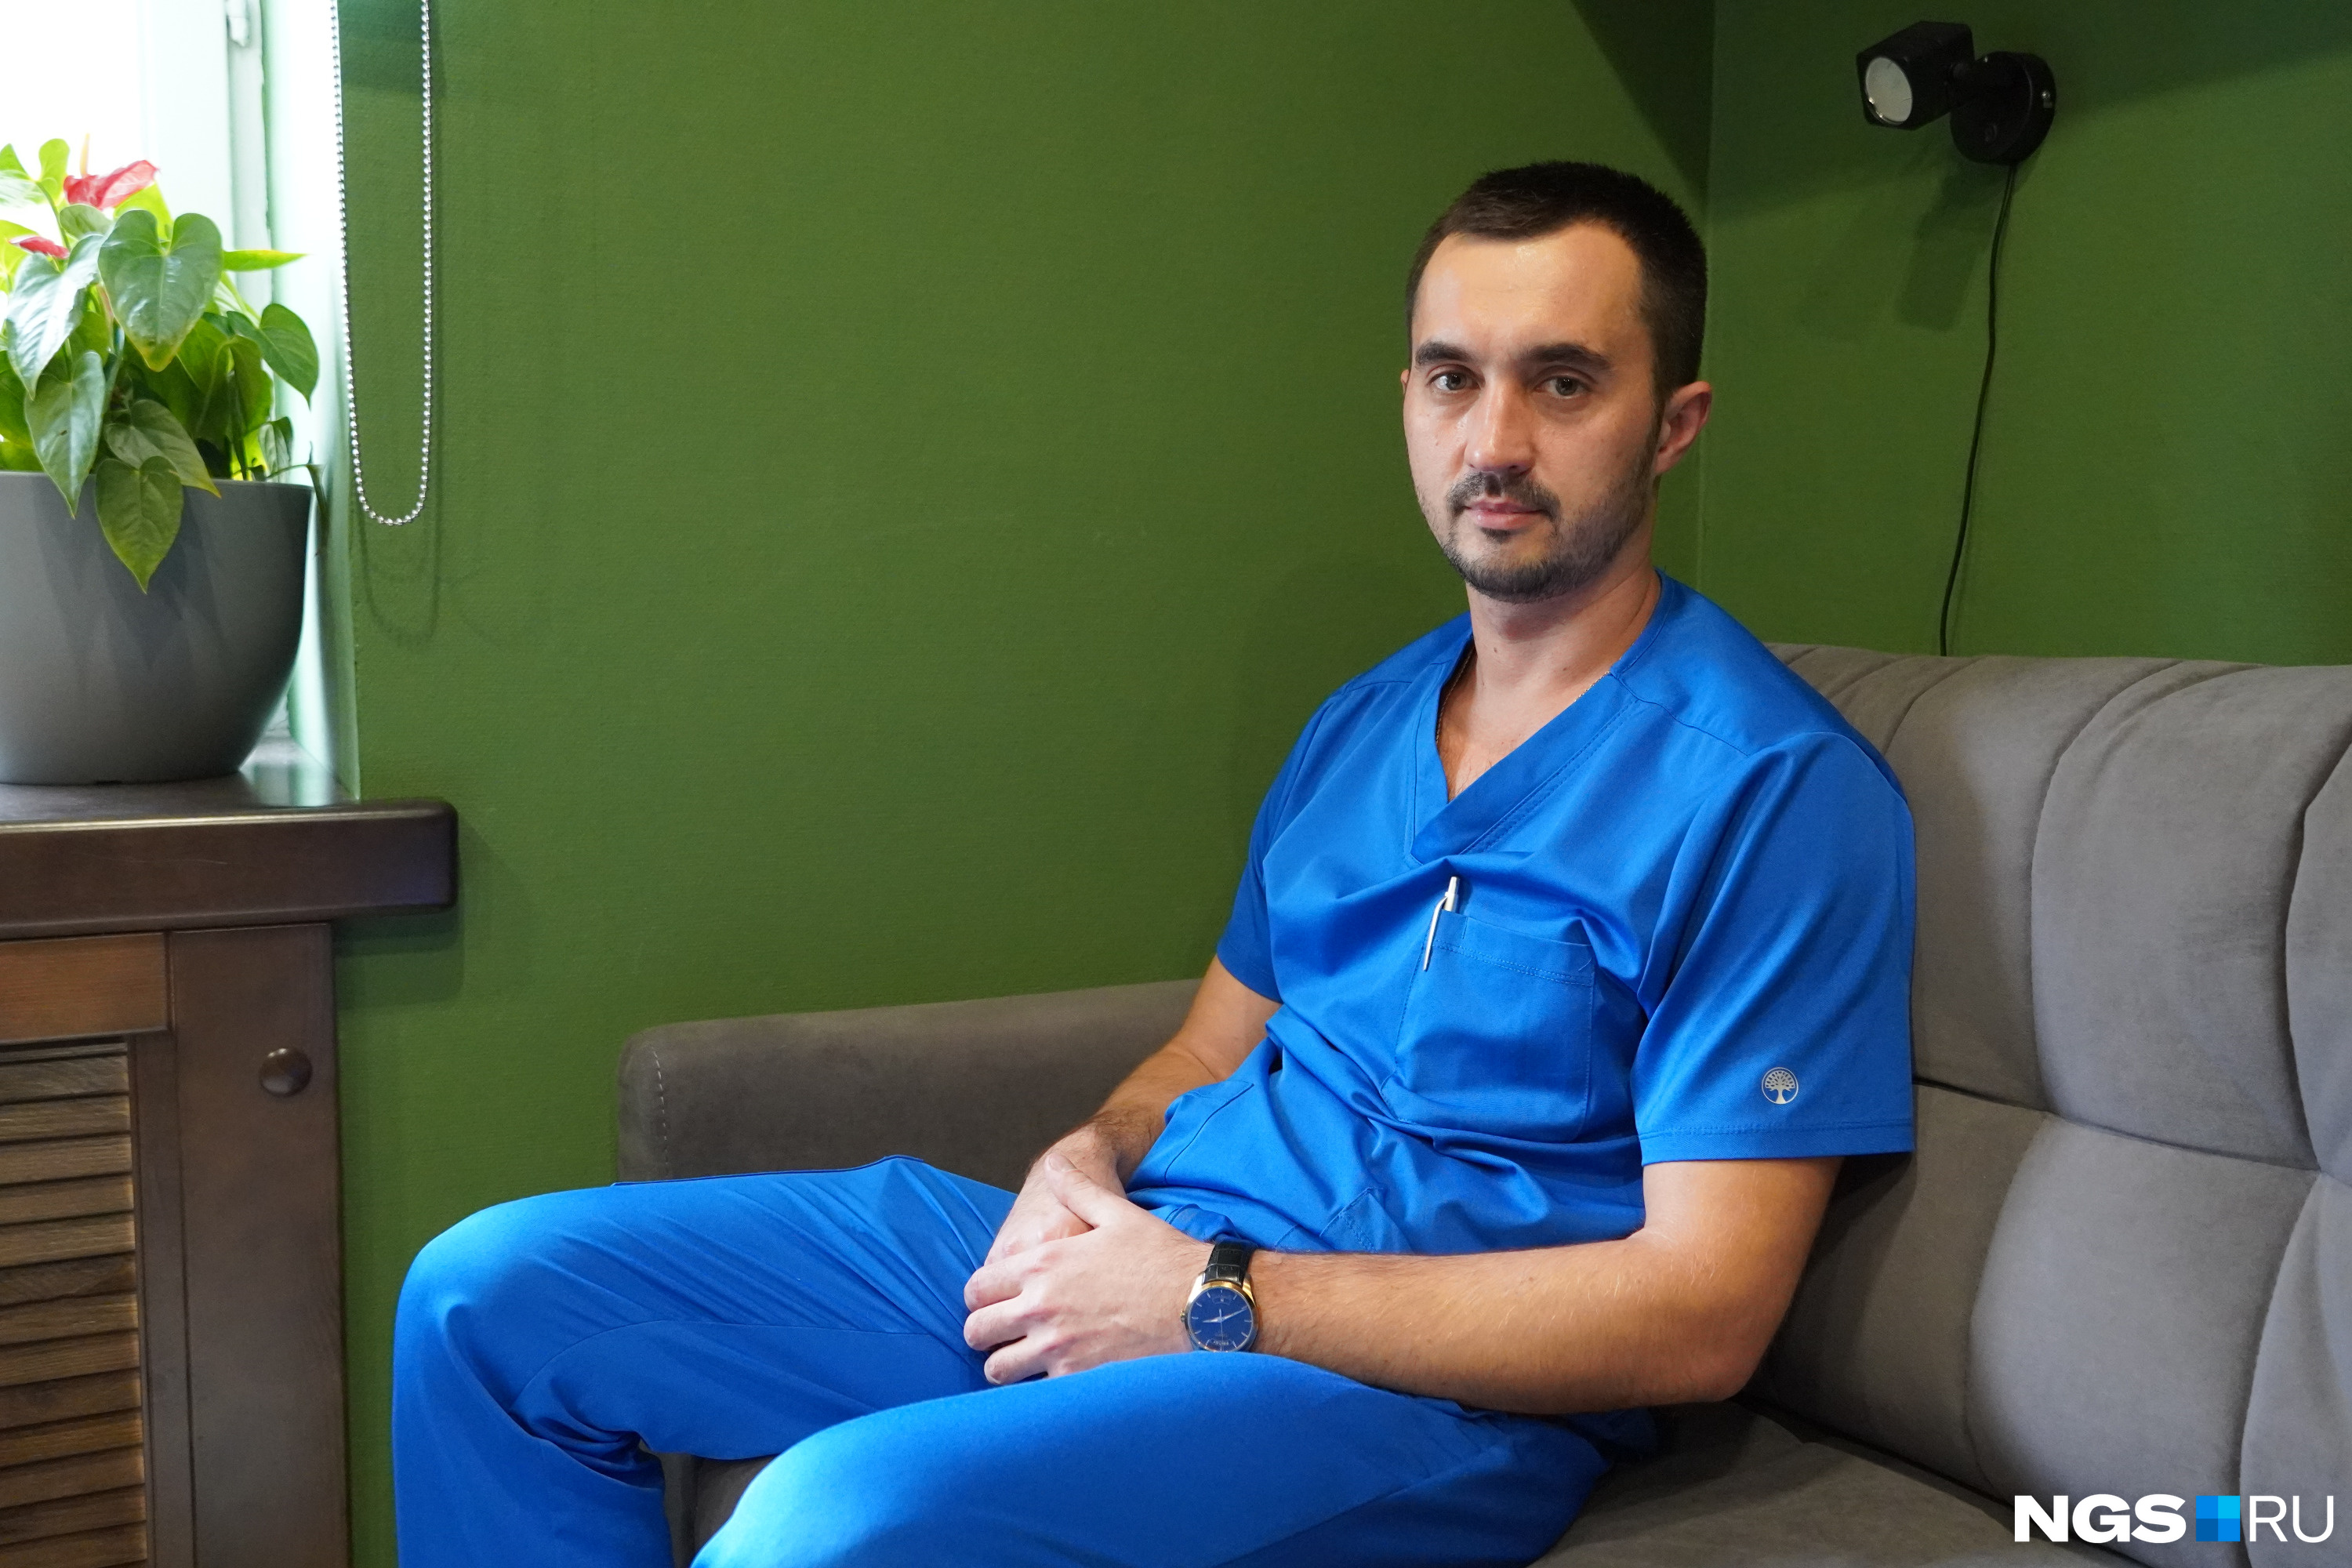 Александр Соболев провел операцию и удалил опухоль. Наталья очень ему благодарна, в том числе и за аккуратный шов, который сейчас почти незаметен